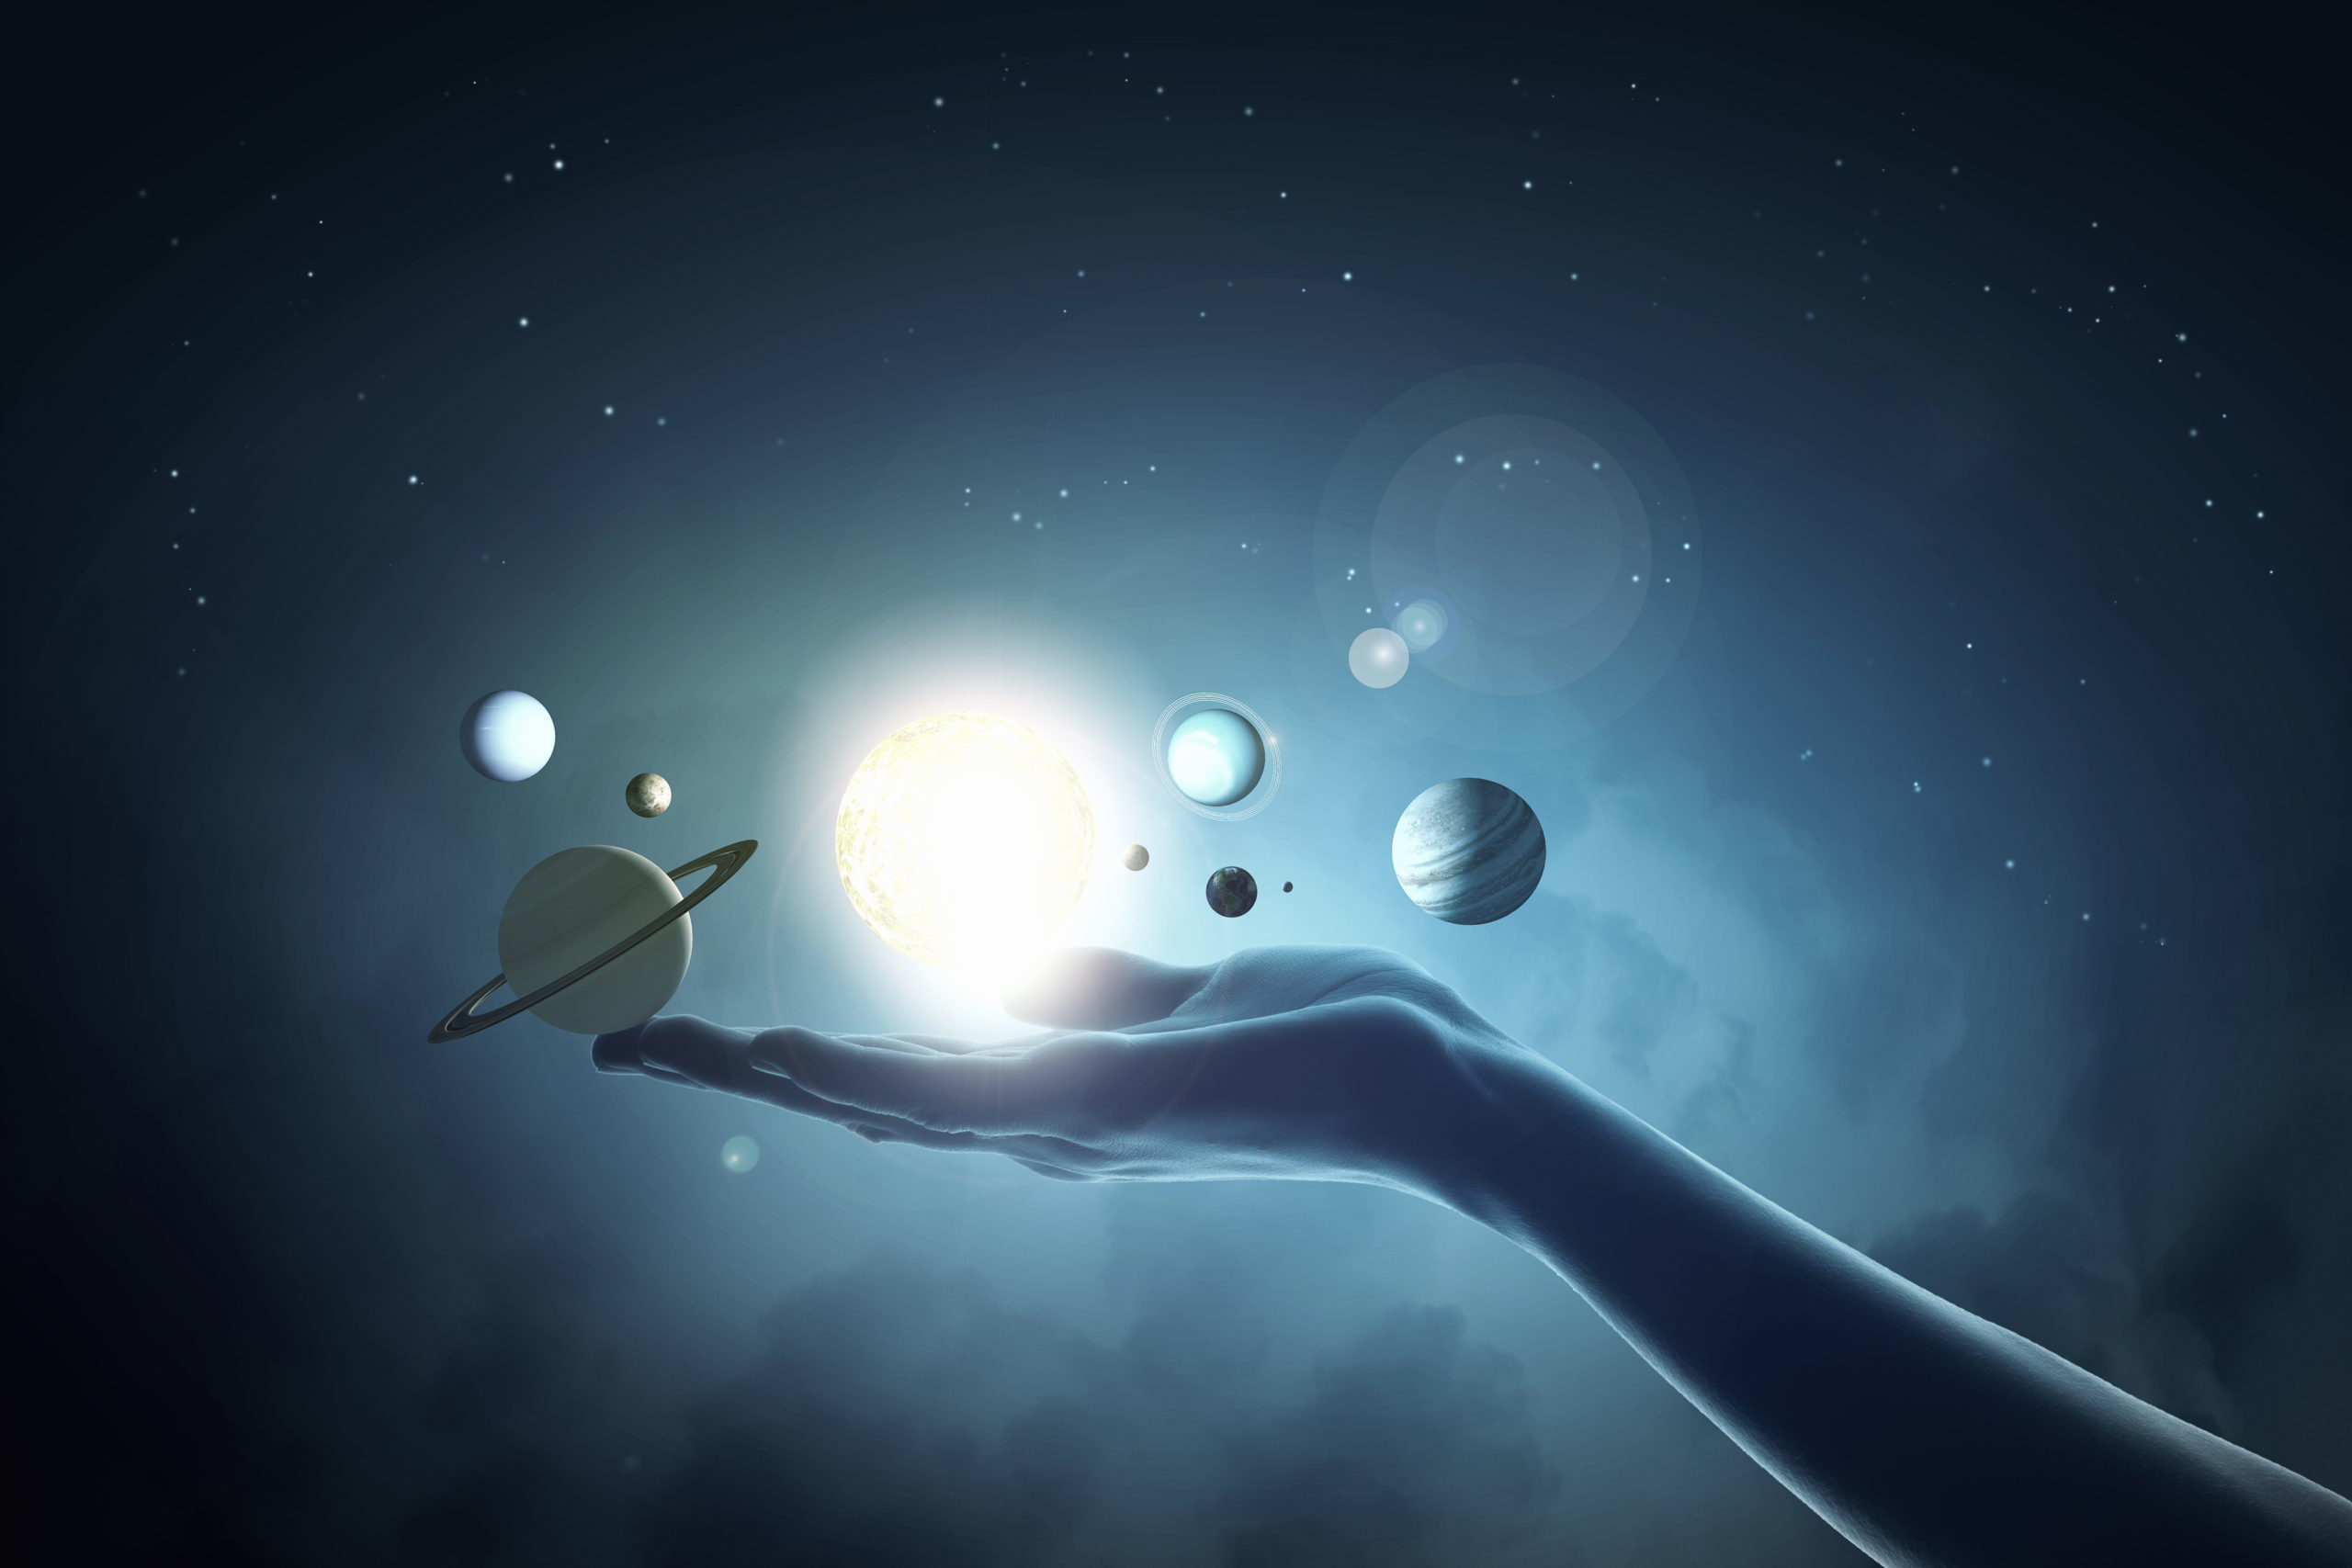 Cette image représente un main, symbole de l'homme, portant des planètes du système solaire, montrant ainsi sa relation avec l'Astrologie, la Numérologie et la Pentanalogie.